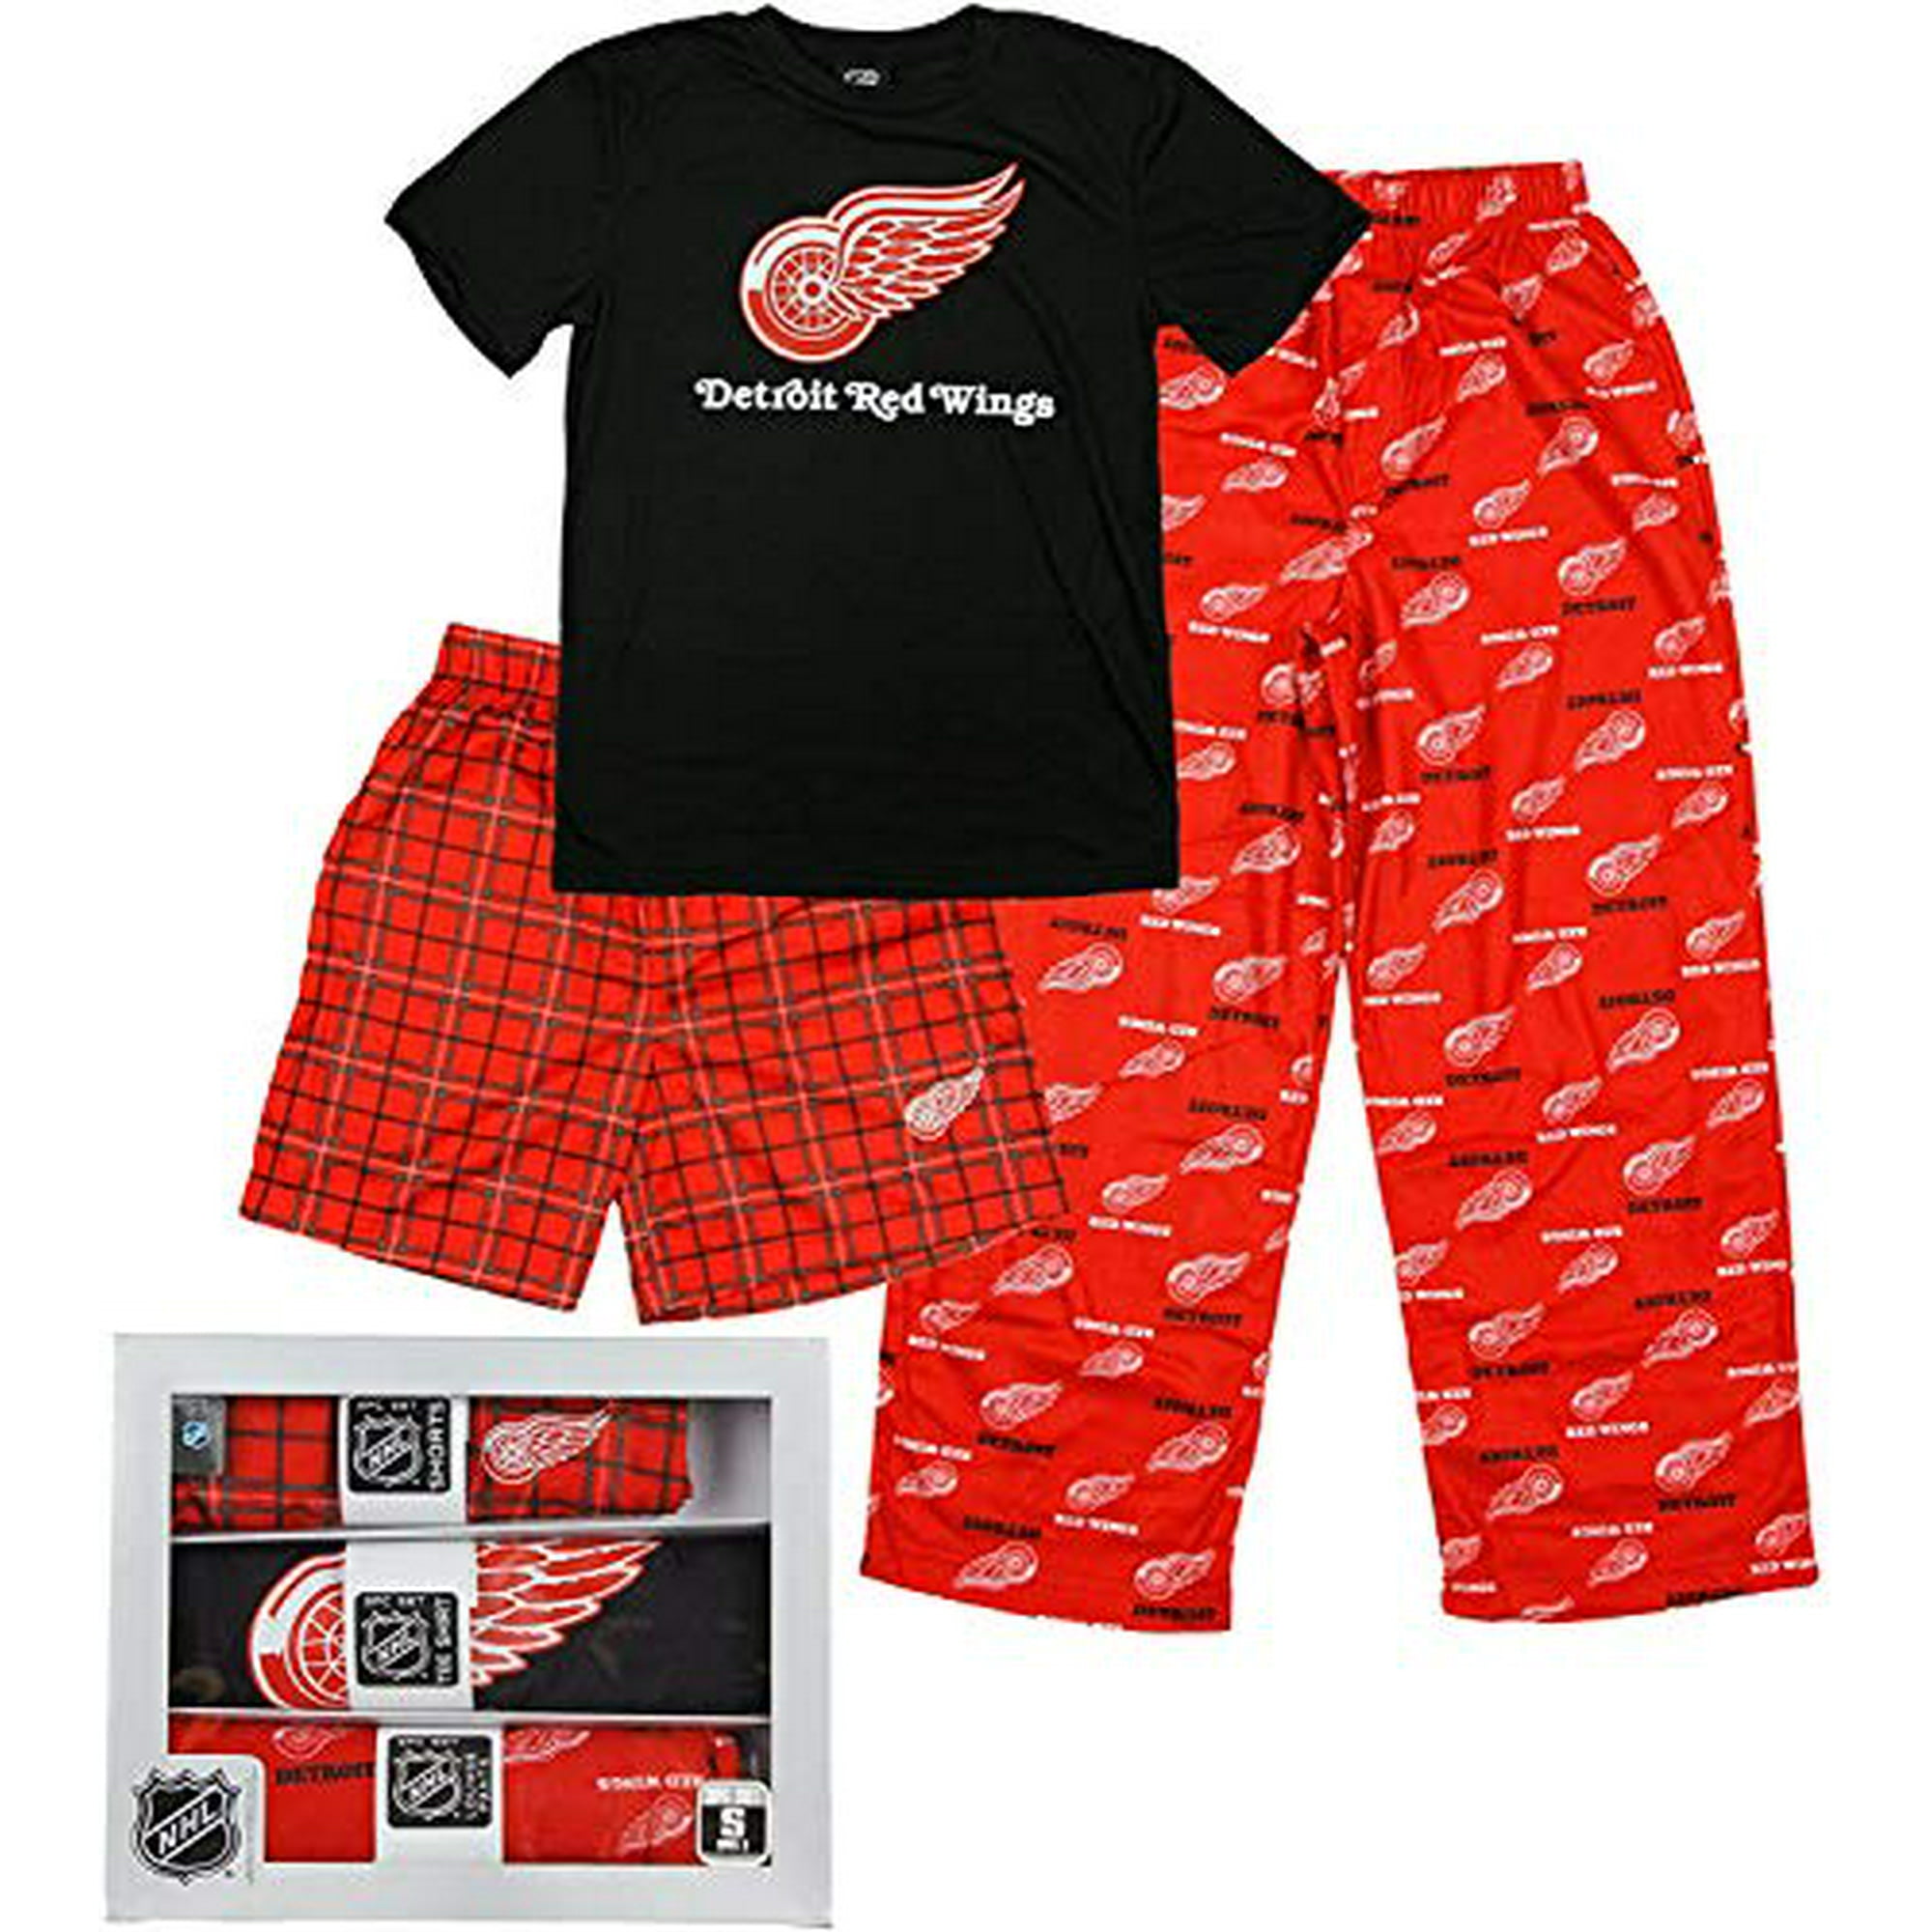 Detroit Red Wings Nightwear, Red Wings Sleepwear